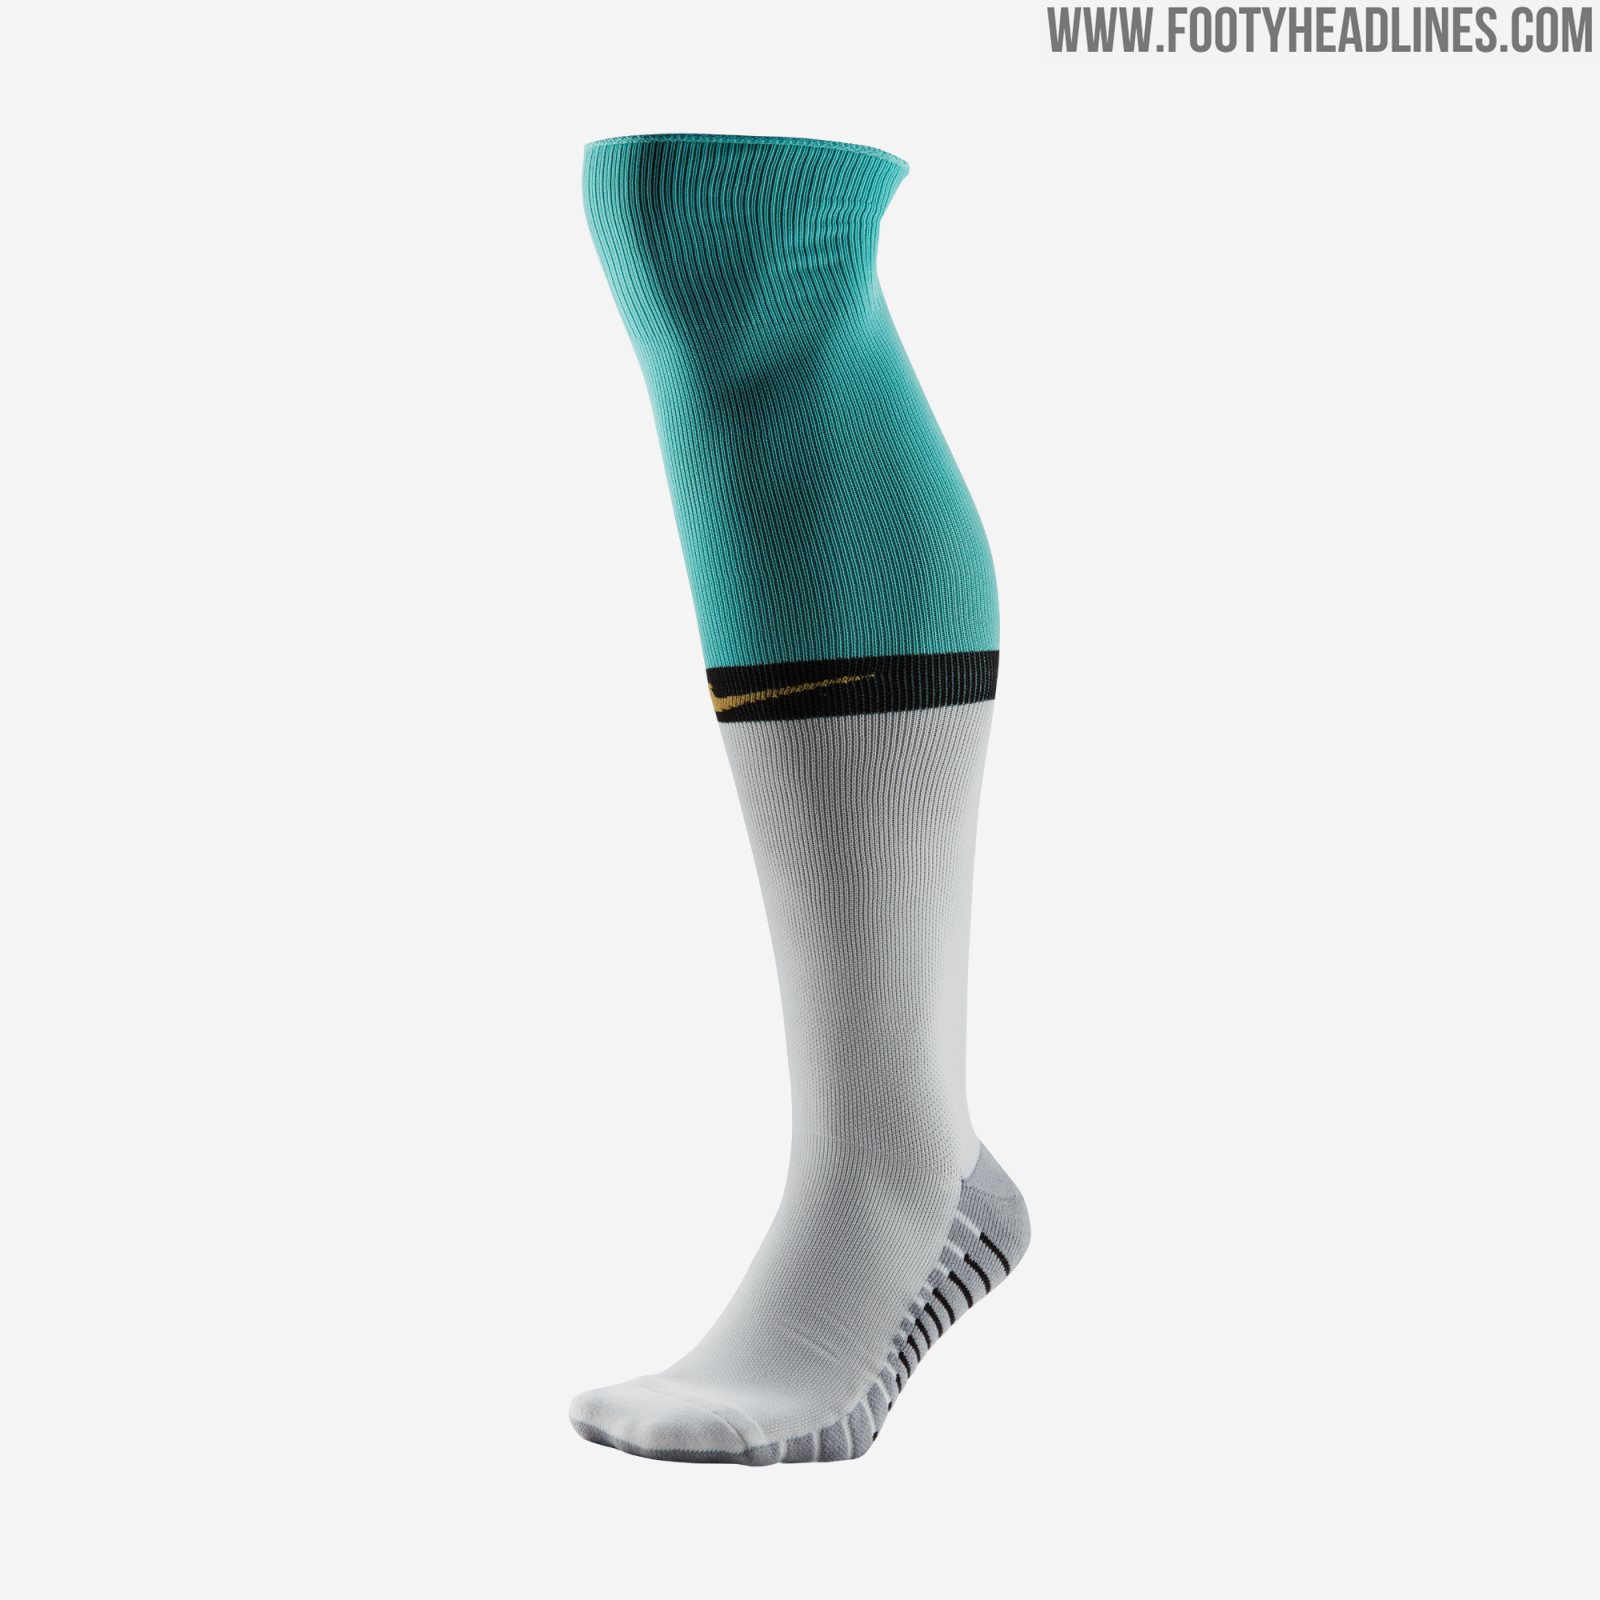 Nike Splash Inter Milan's 2019-20 Away Kit in Mint Fresh Aquamarine